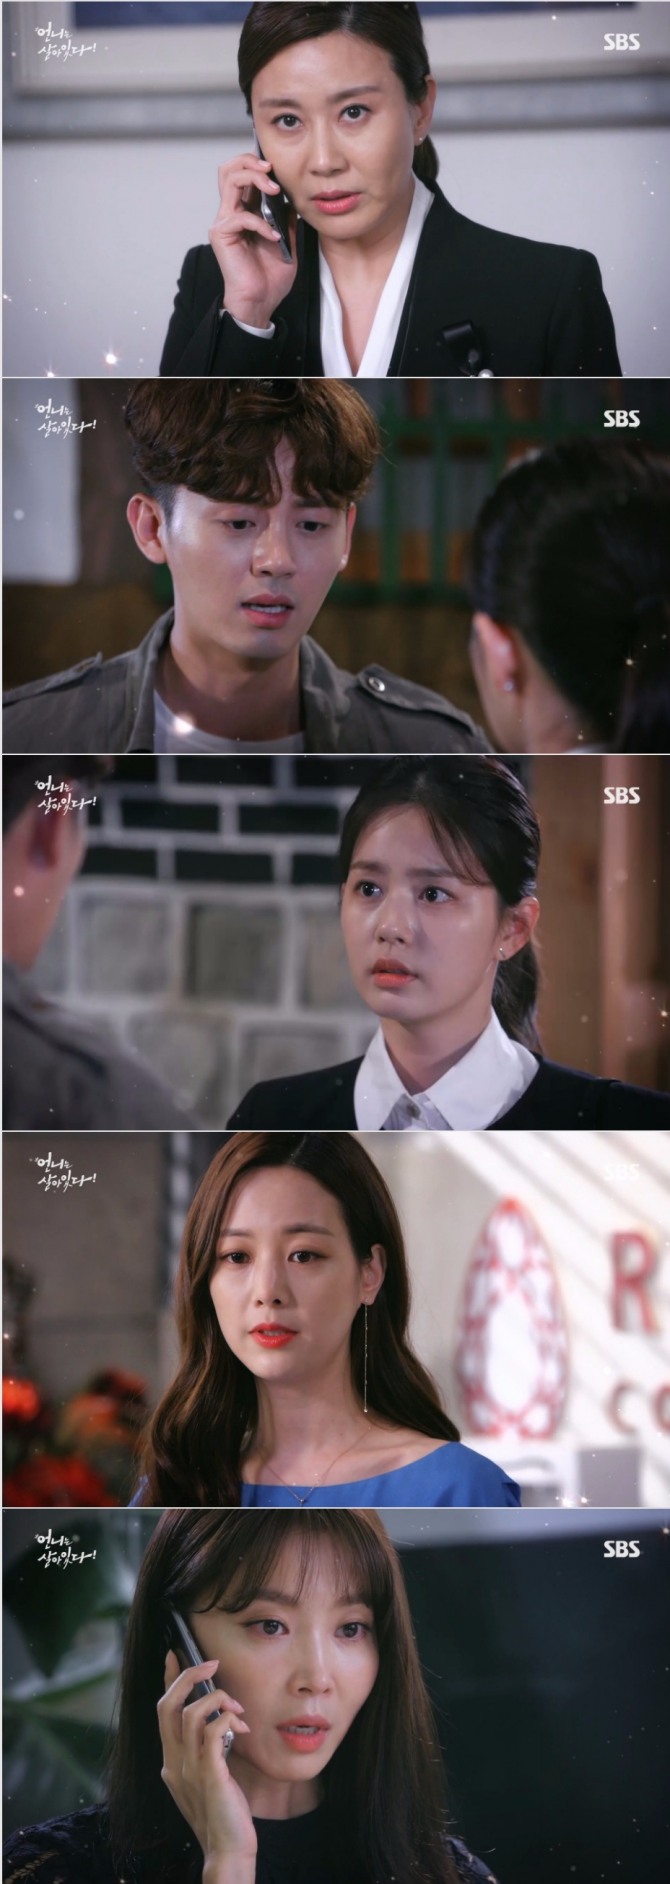 13일 밤 방송되는 SBS 주말드라마 '언니는 살아있다' 9~10회에서는 김은향(오윤아)가 구세경(손여은)에게 본격적으로 접근해 치밀한 복수극을 펼치는 장면이 그려진다. 사진=SBS 영상 캡처